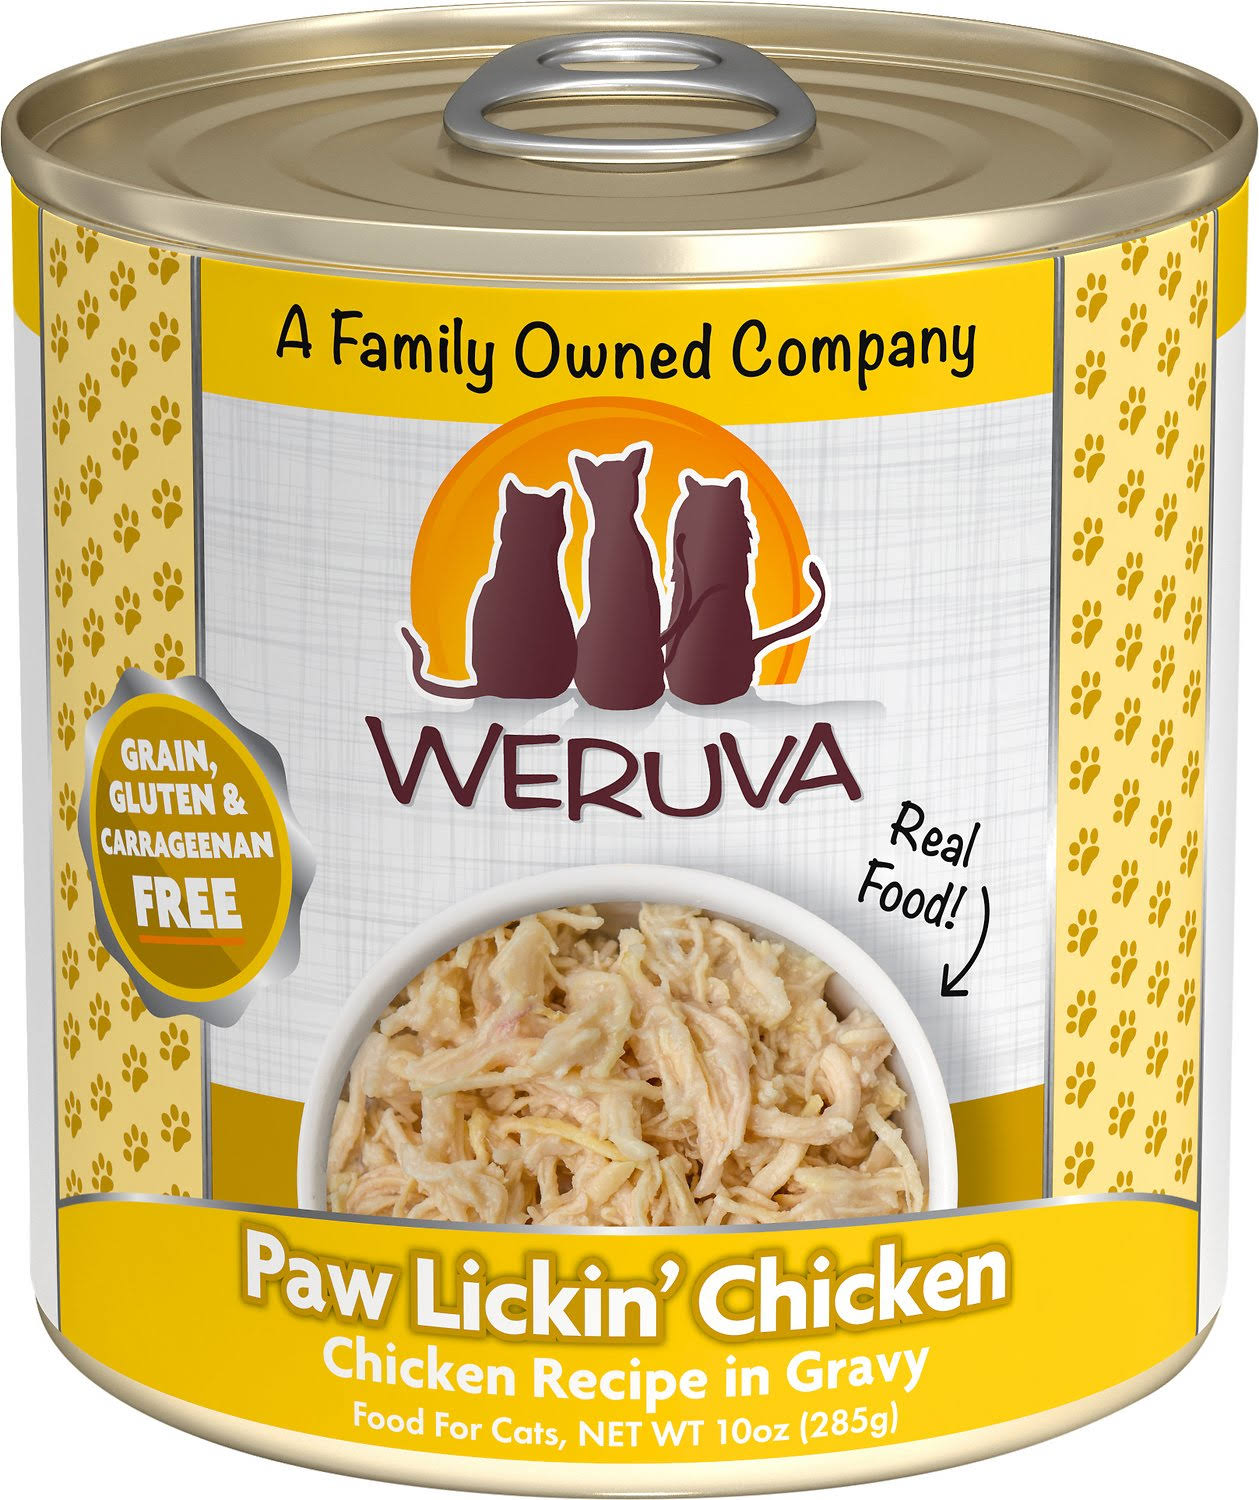 Weruva Cat Food - Paw Lickin' Chicken